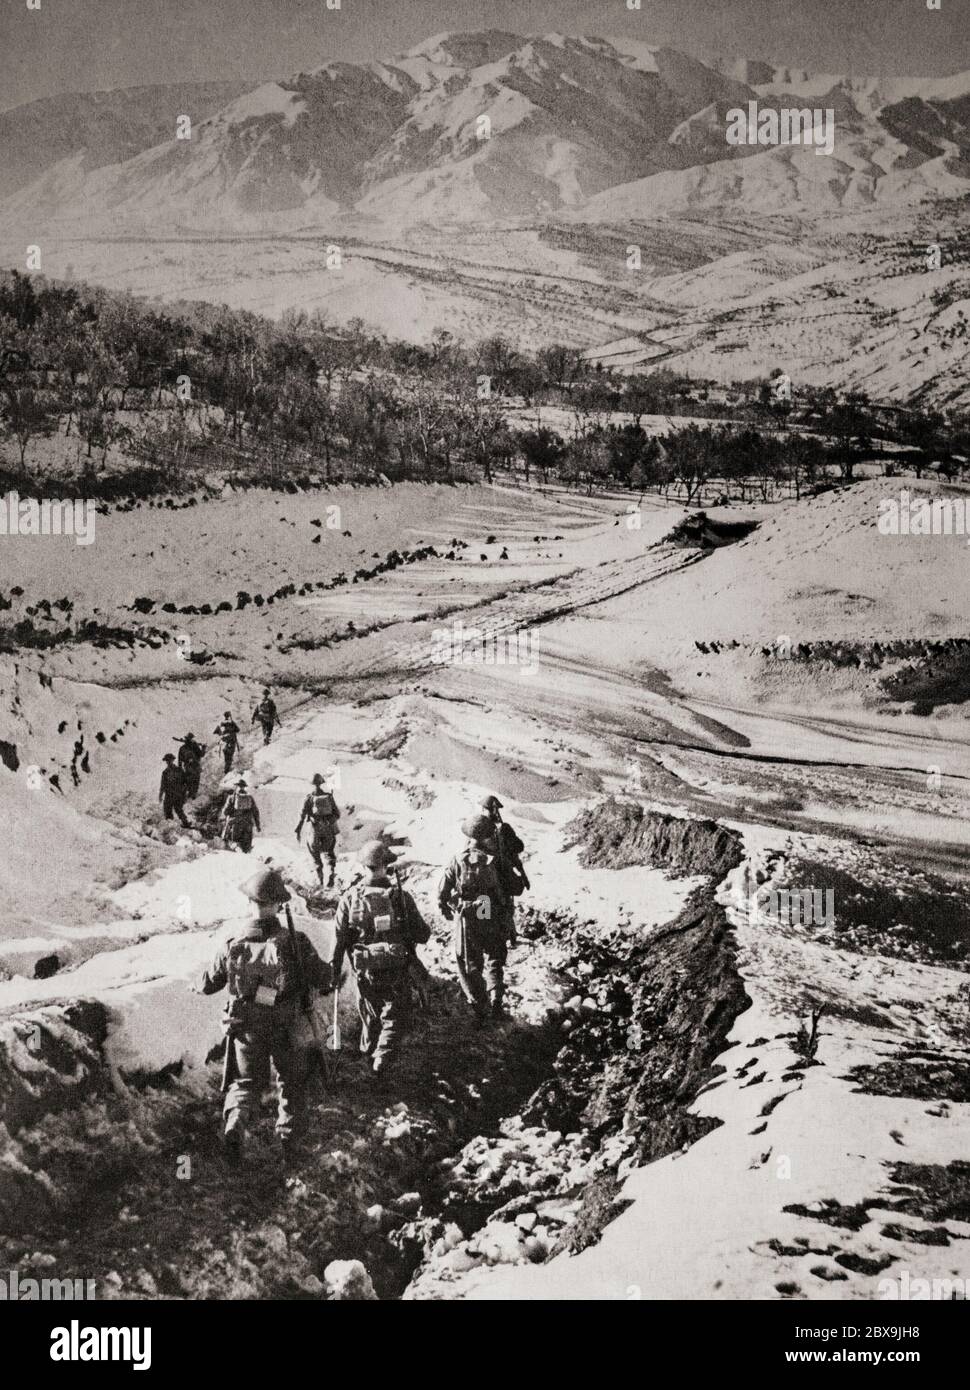 Les soldats britanniques avancent dans les montagnes enneigées après le débarquement d'Anzio. La bataille d'Anzio faisait partie de la ligne d'hiver et de la bataille pour Rome de la campagne italienne de la Seconde Guerre mondiale qui s'est déroulée du 22 janvier 1944 au 5 juin 1944 (se terminant par la capture de Rome). Les forces allemandes dans la région d'Anzio et de Nettuno ont opposé l'opération. Banque D'Images